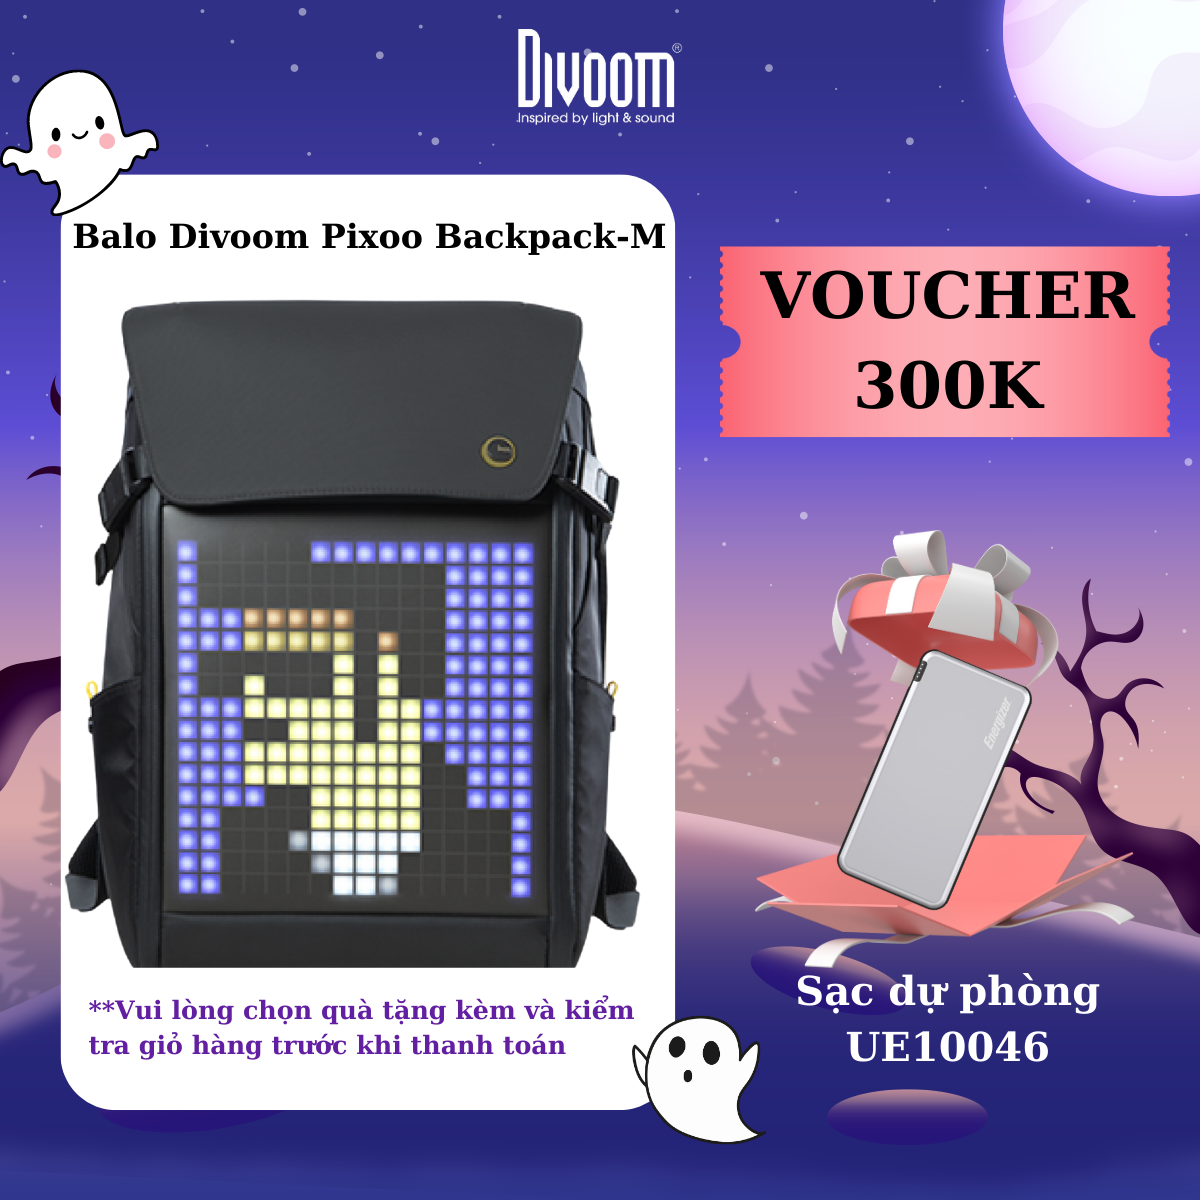 Balo Divoom – Pixoo Backpack-M có màn hình LED tùy chỉnh bằng APP, ngăn chứa lớn vừa Laptop 14 Inch, chống thấm nước cho hoạt động ngoài trời